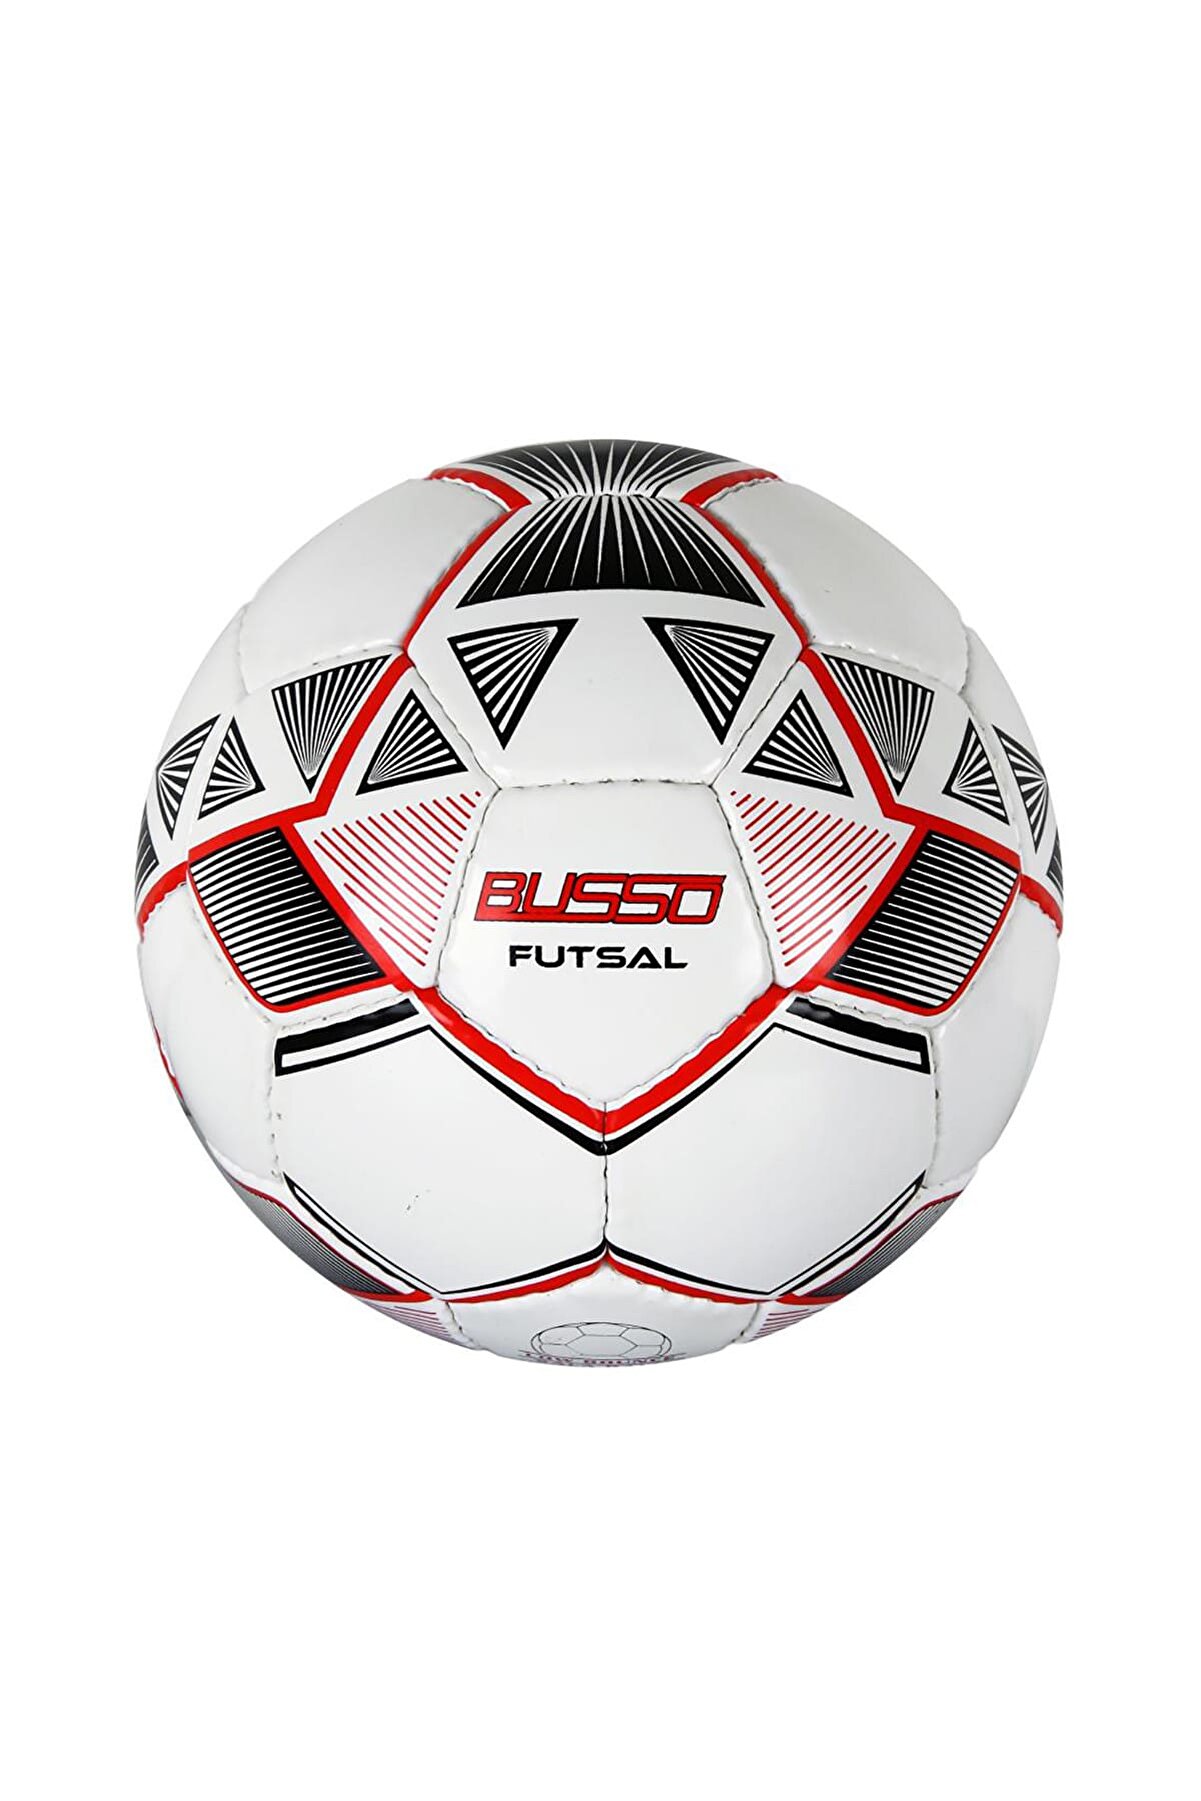 Busso Futsal Top (Kırmızı-Beyaz) Yeni